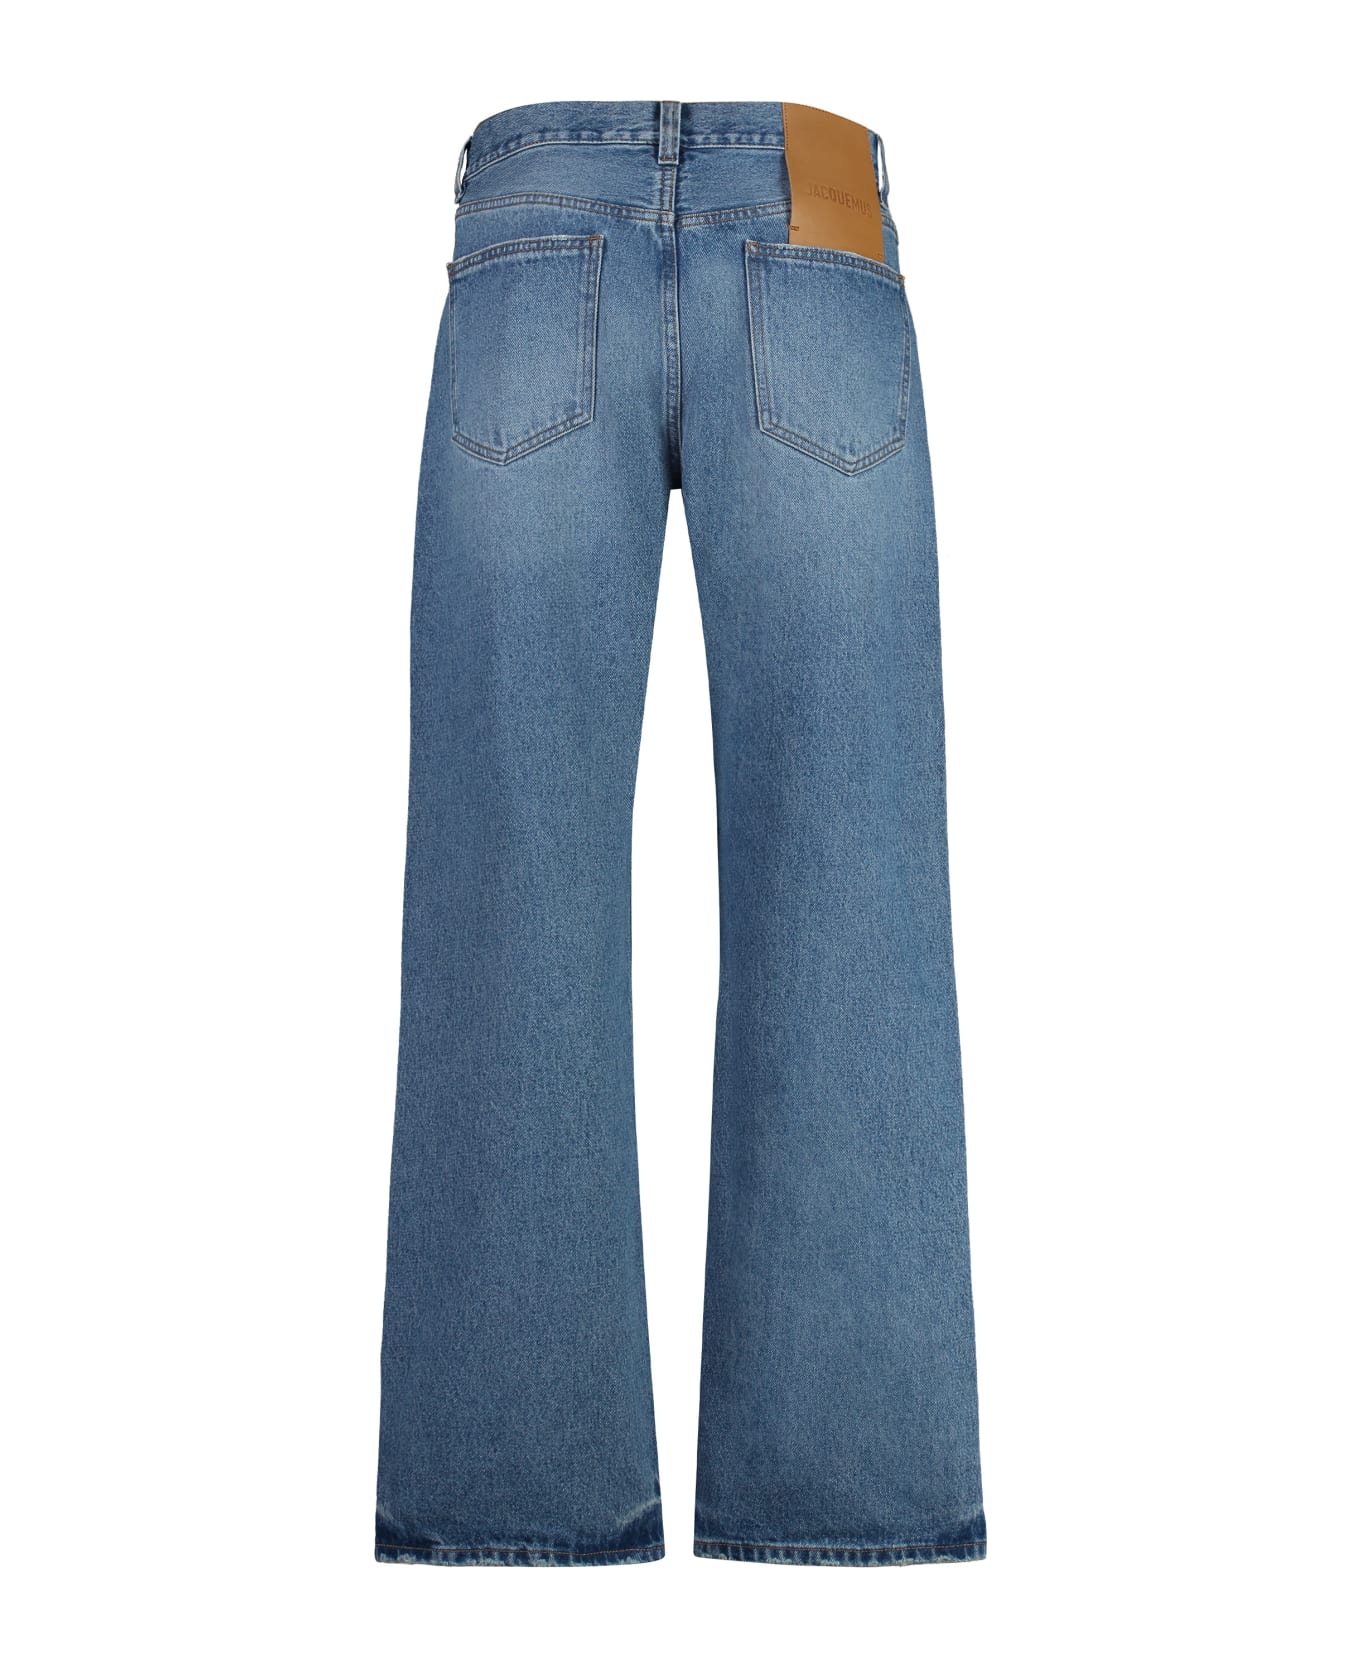 Jacquemus Nîmes 5-pocket Straight-leg Jeans - 33C BLUE/TABAC デニム